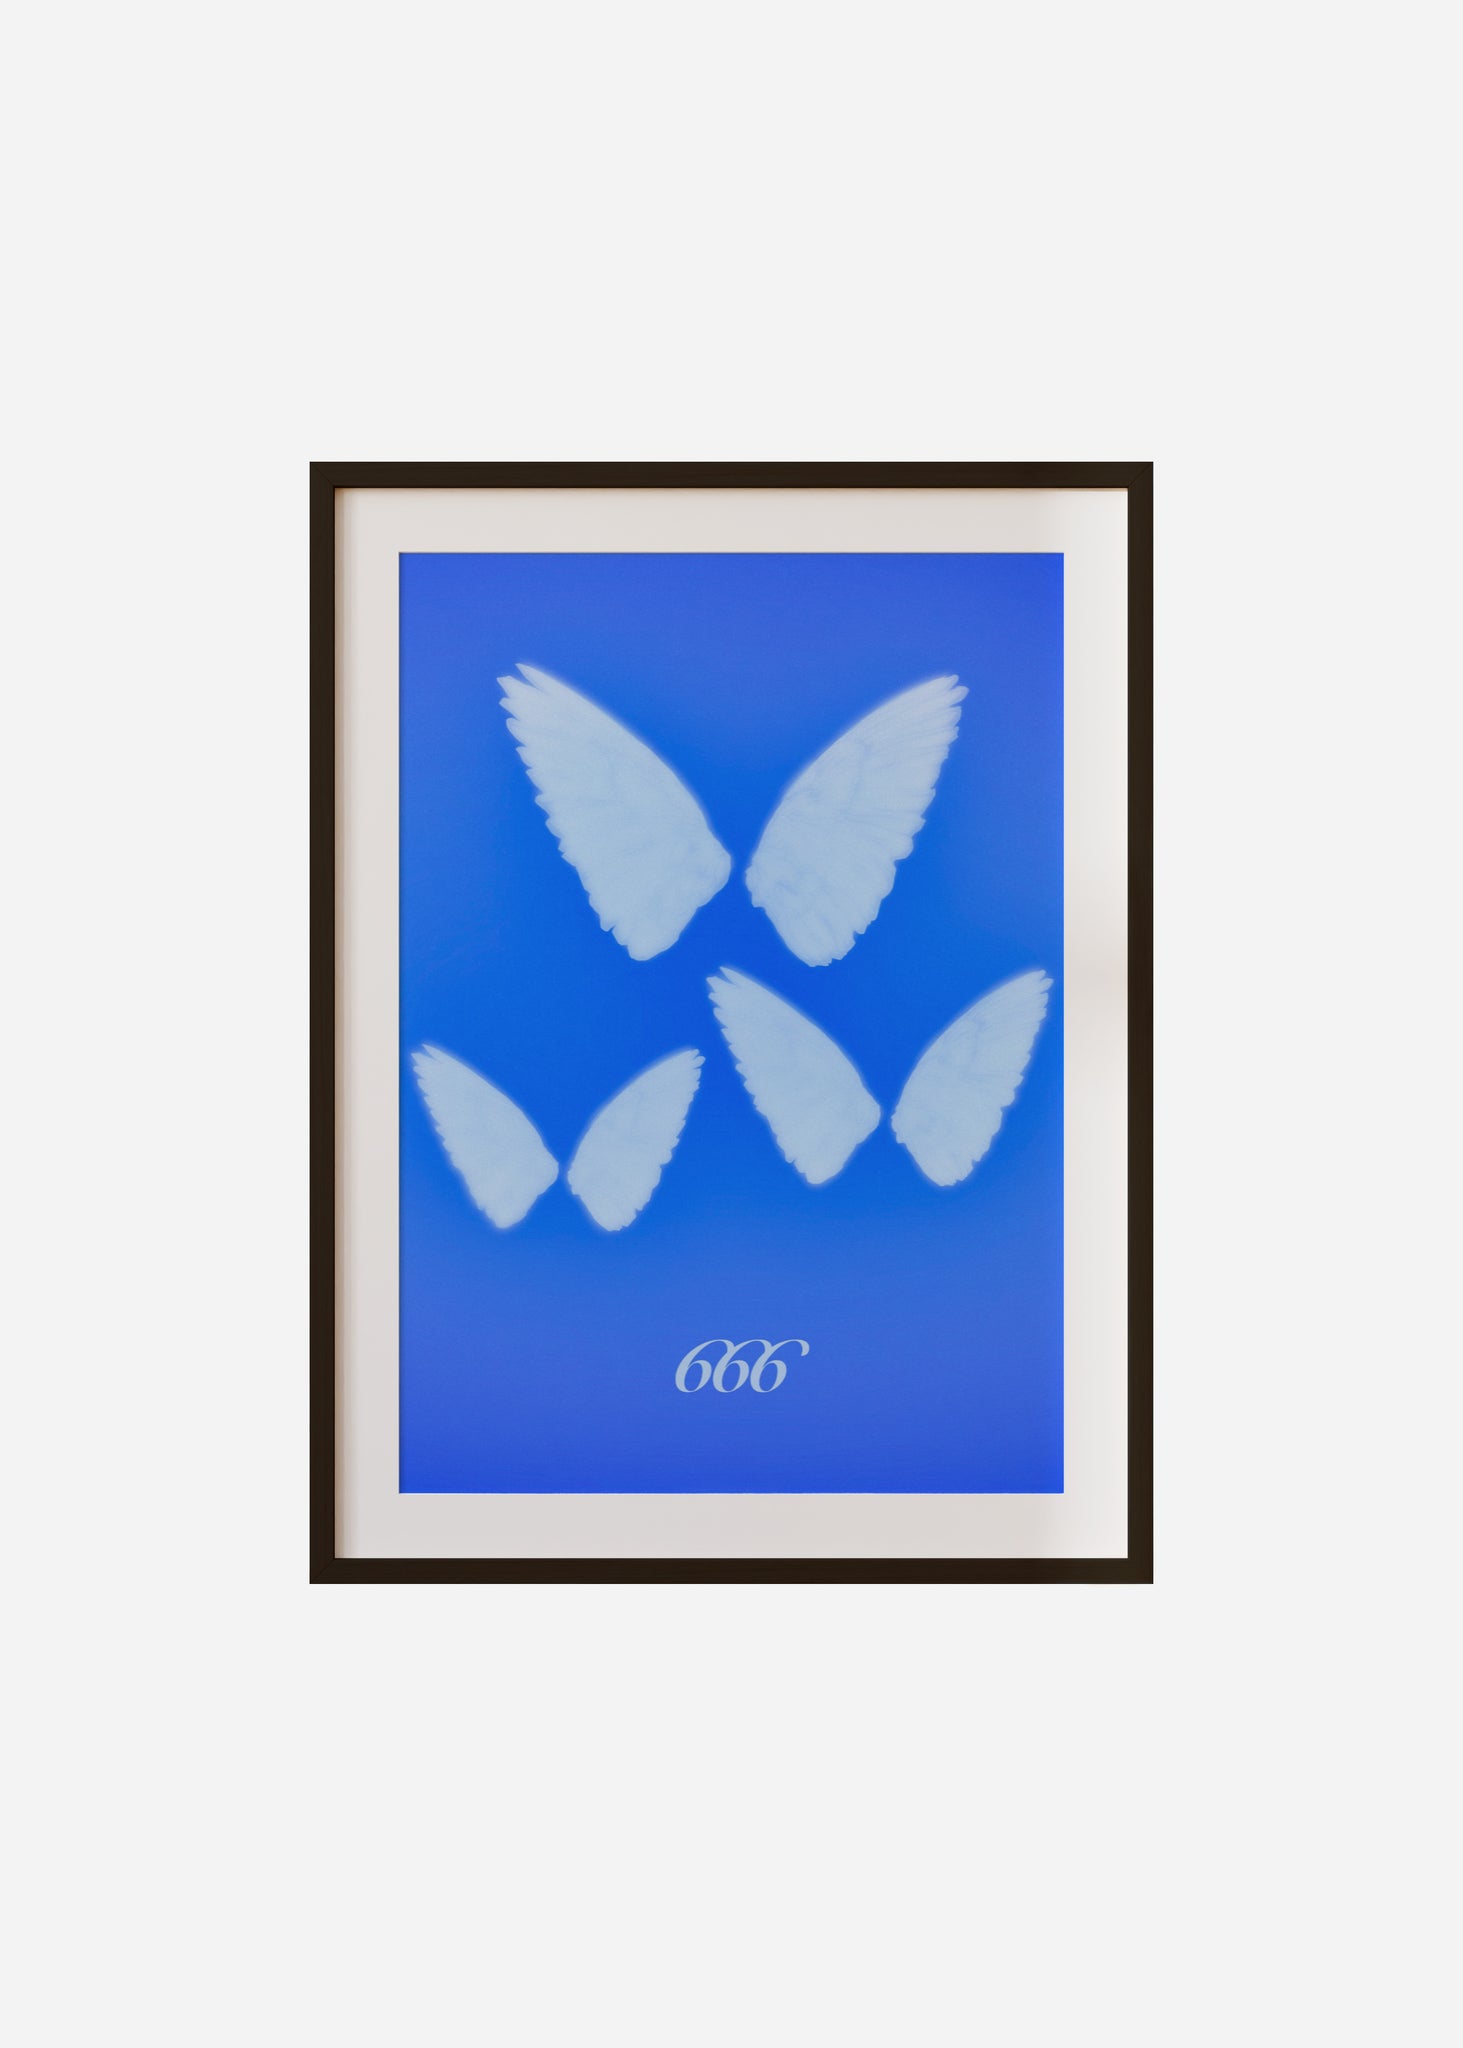 Angel Wings 666 Framed & Mounted Print